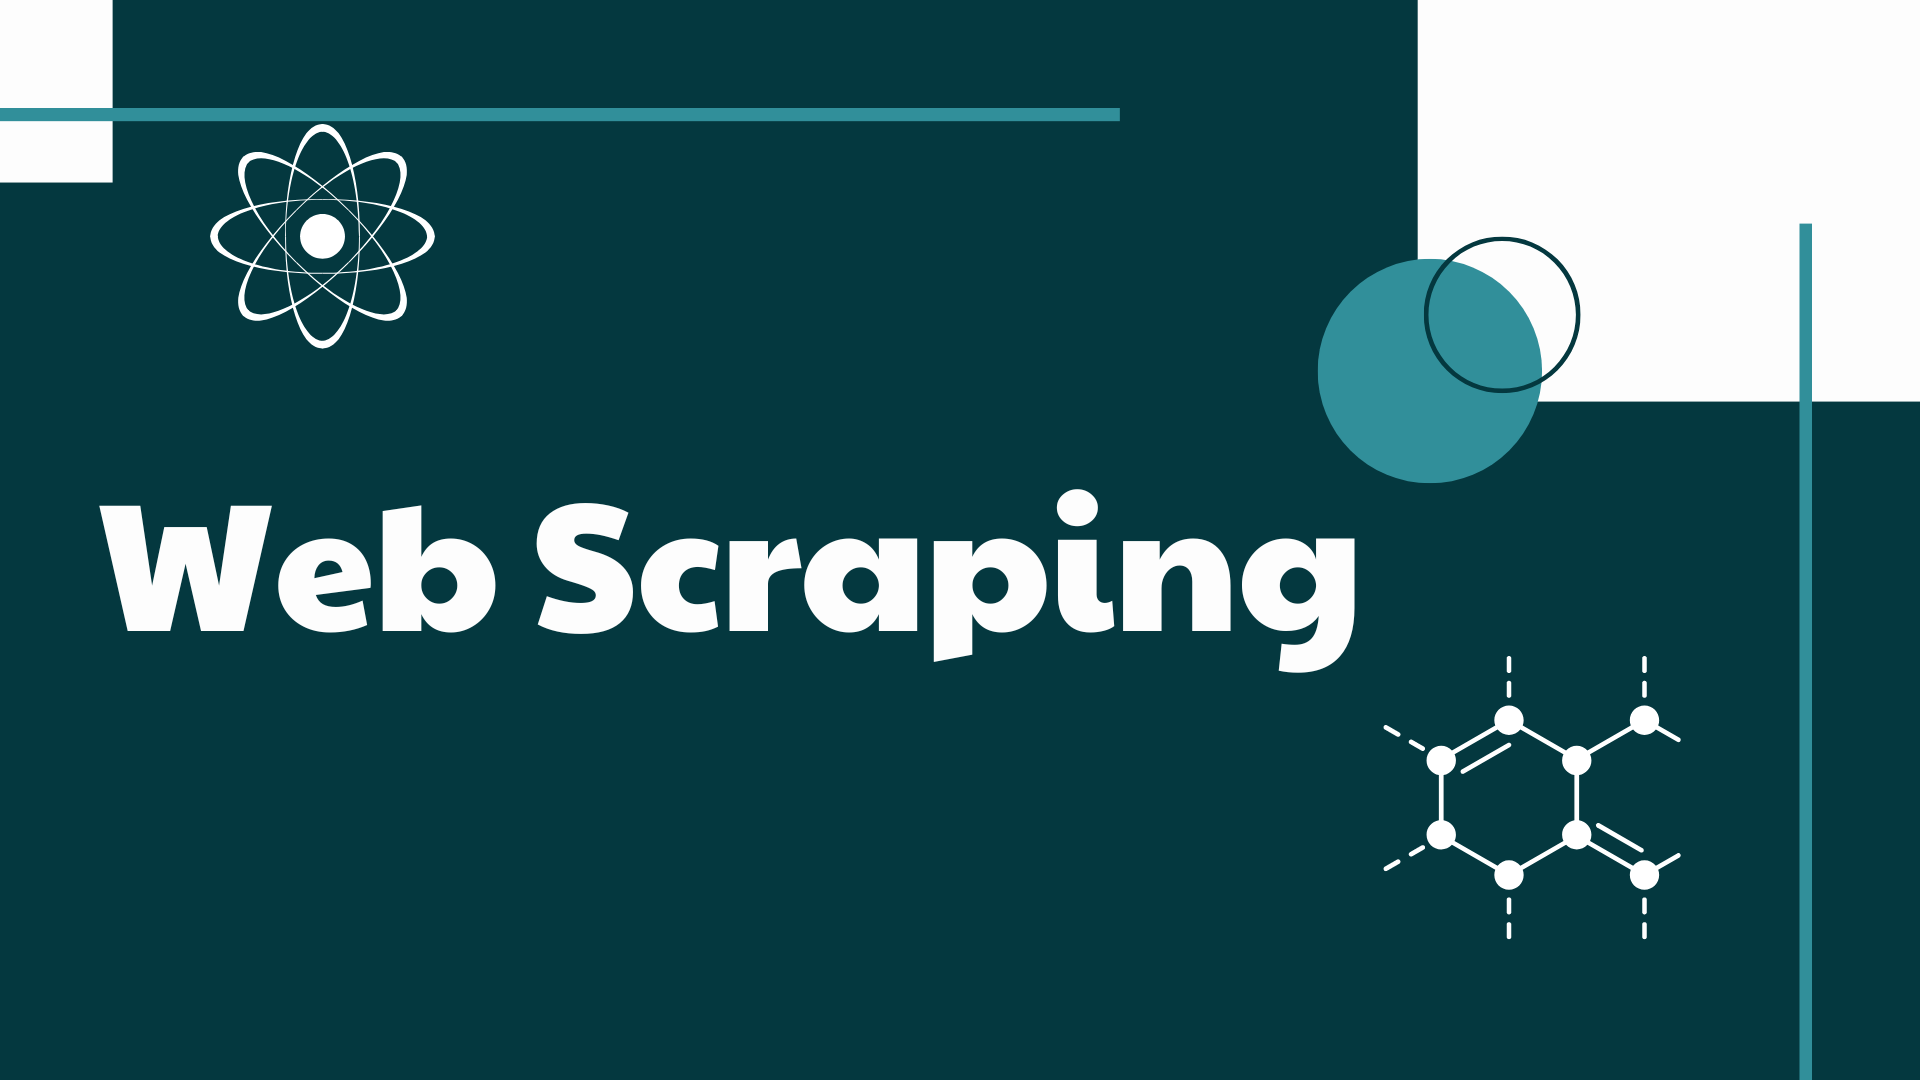 Web Scraping là gì?